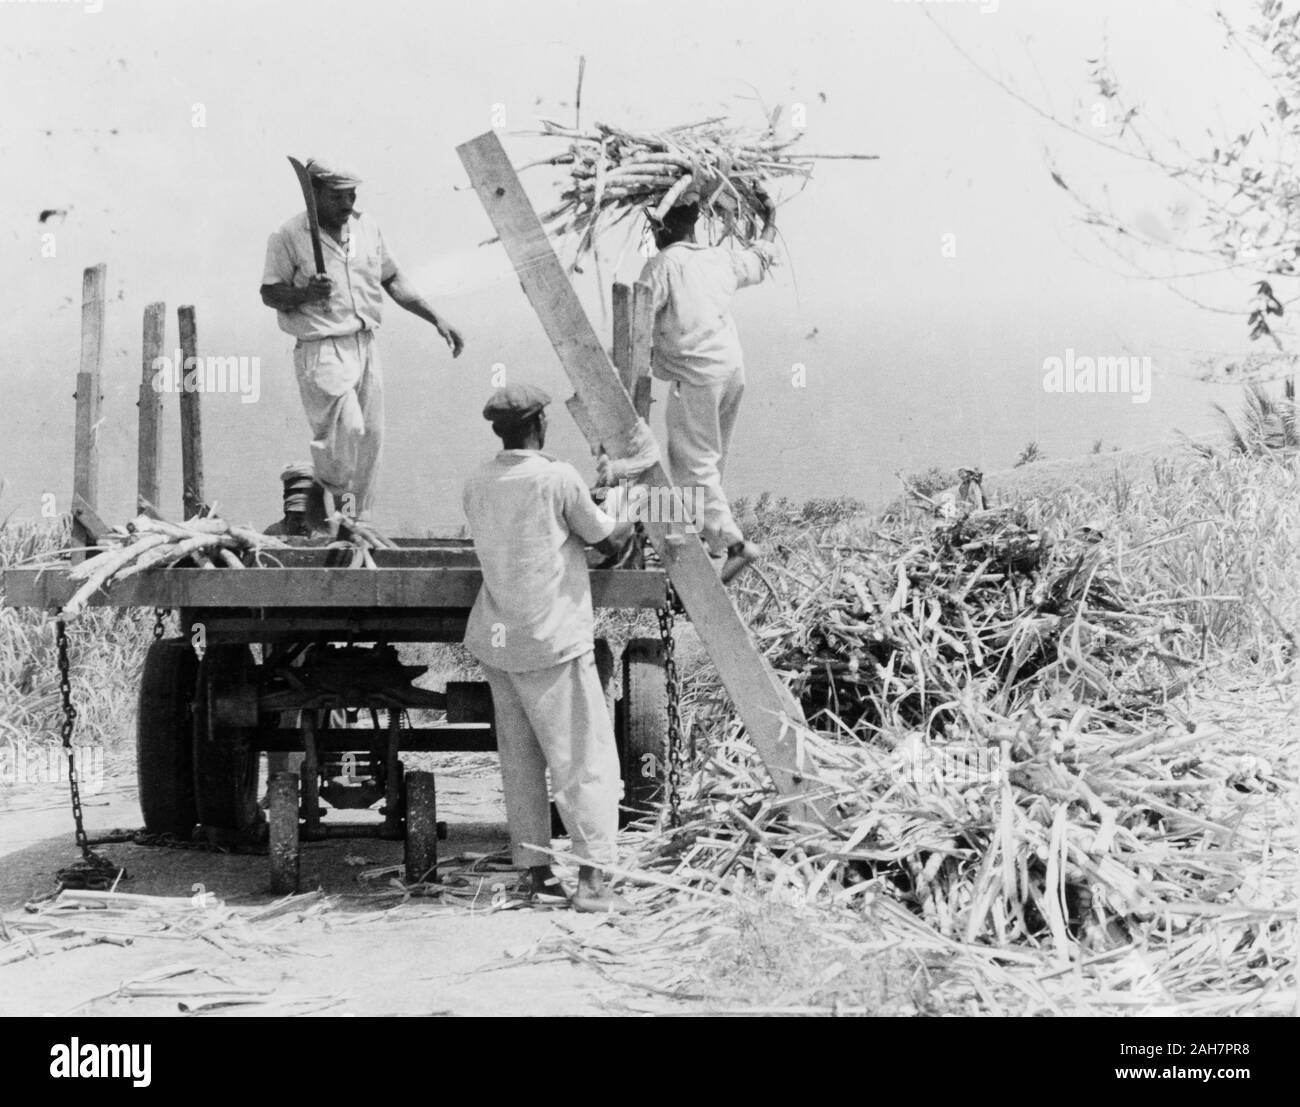 Récolte de la canne à sucre, la Barbade, la Barbade. Trois hommes récolter la canne à sucre à la plantation, la récolte de coupe en plusieurs longueurs avec une machette avant de les empiler sur une remorque. La Barbade, 1965. Sous-titre suivant 'est de loin la plus importante industrie de la Barbade en 1965. 2005/010/1/13/34. Banque D'Images